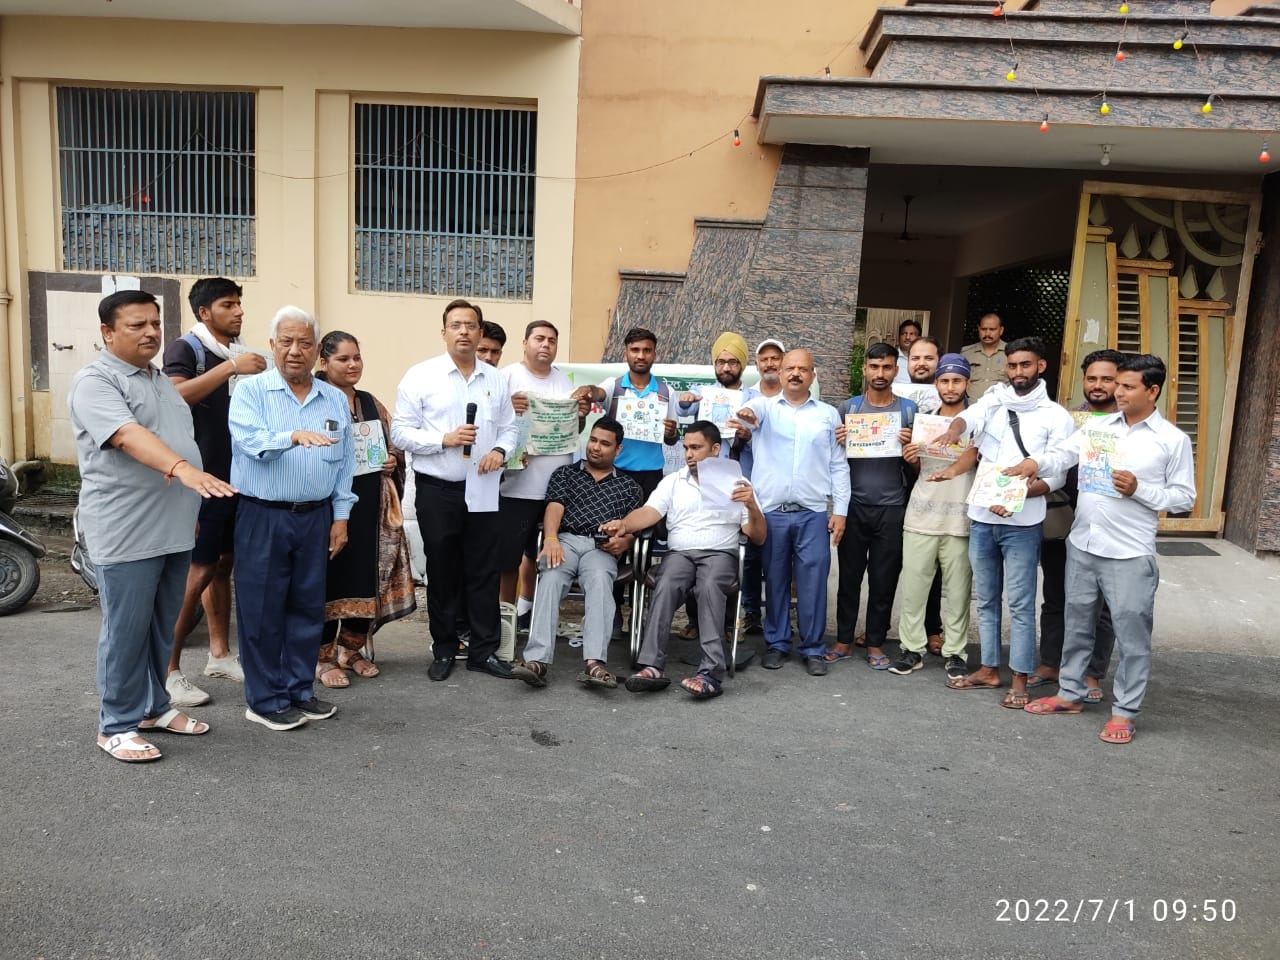 Doctors Day in Meerut : मेरठ में डाक्टर्स डे पर बताए सिंगल यूज प्लास्टिक के हानिकारक प्रभाव, चलाया अभियान